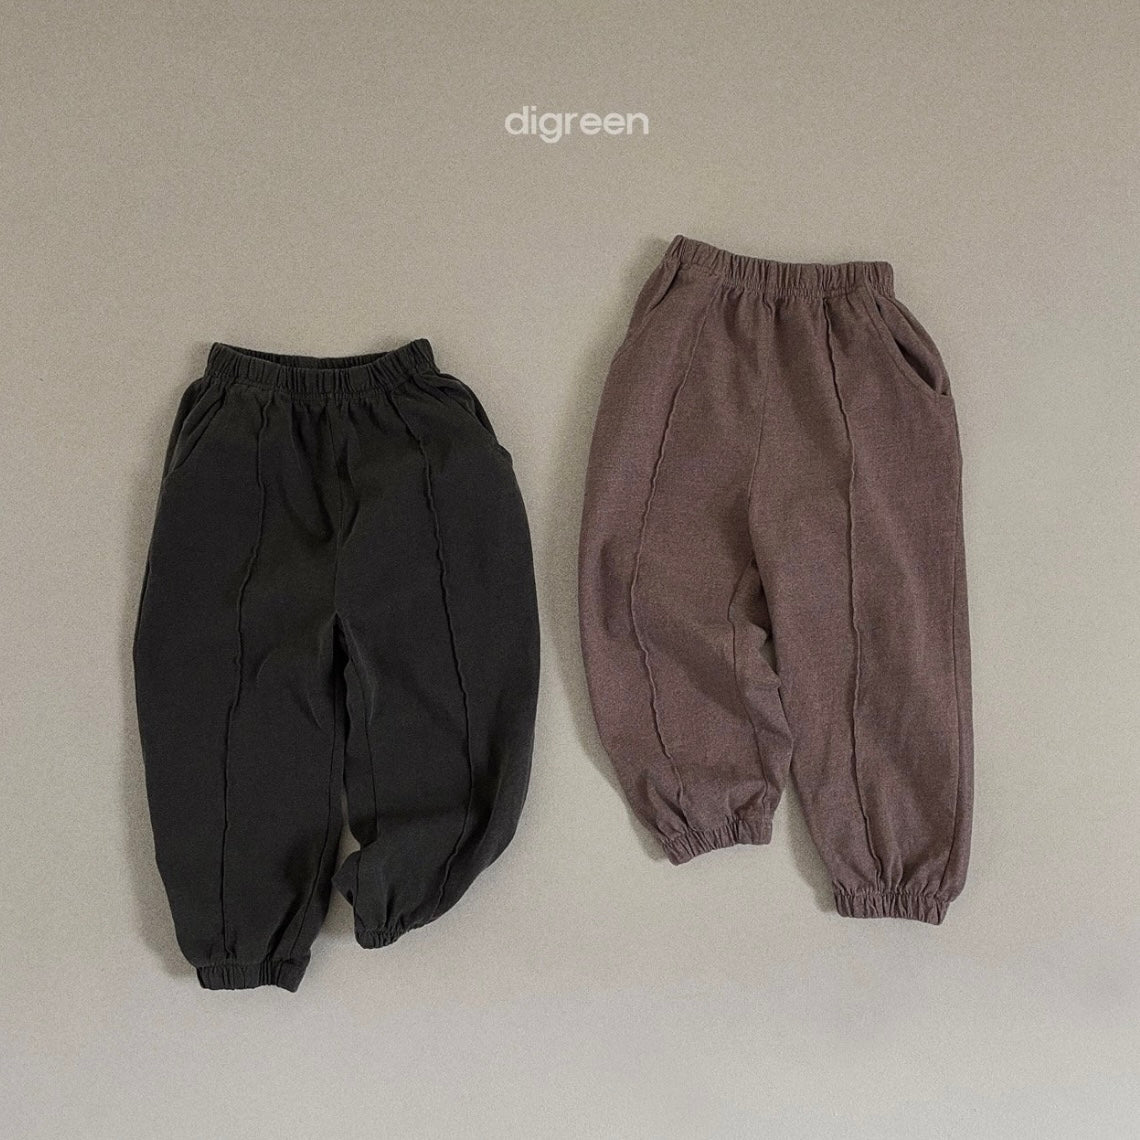 lucky pants [digreen]